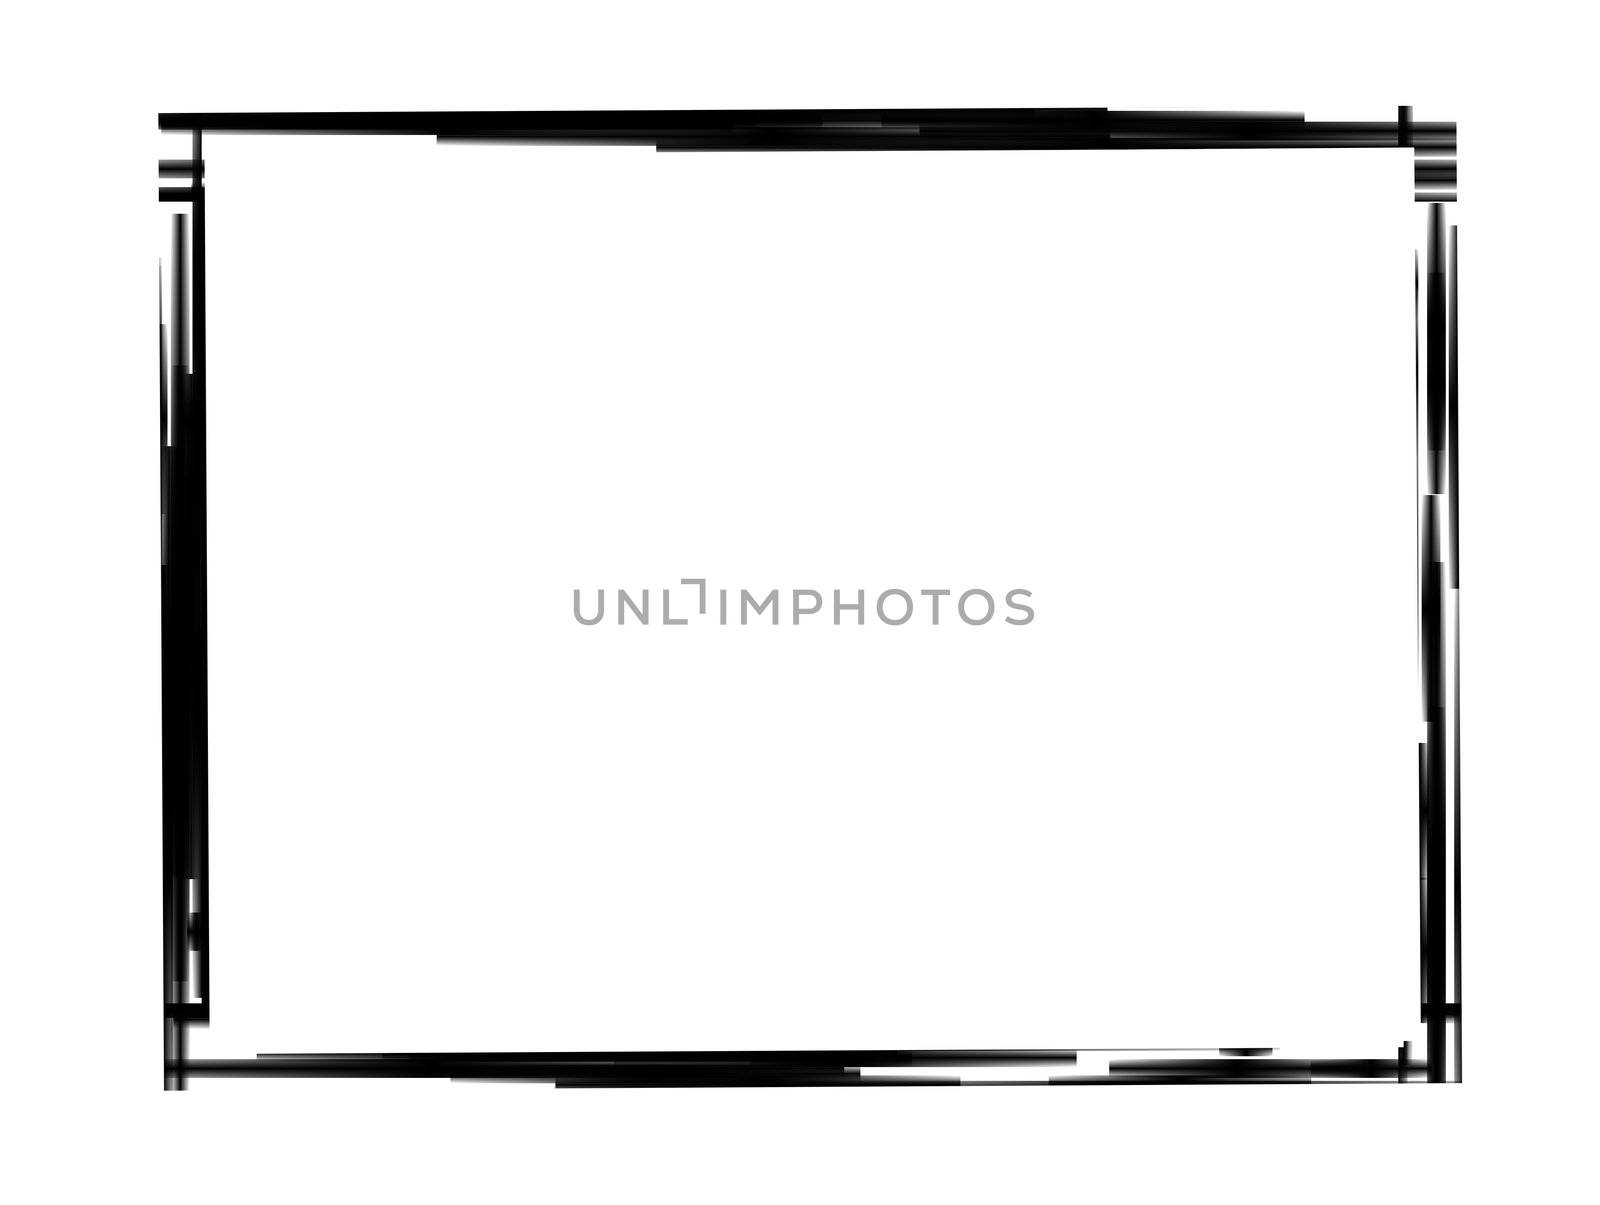 Black grunge border frame on white background